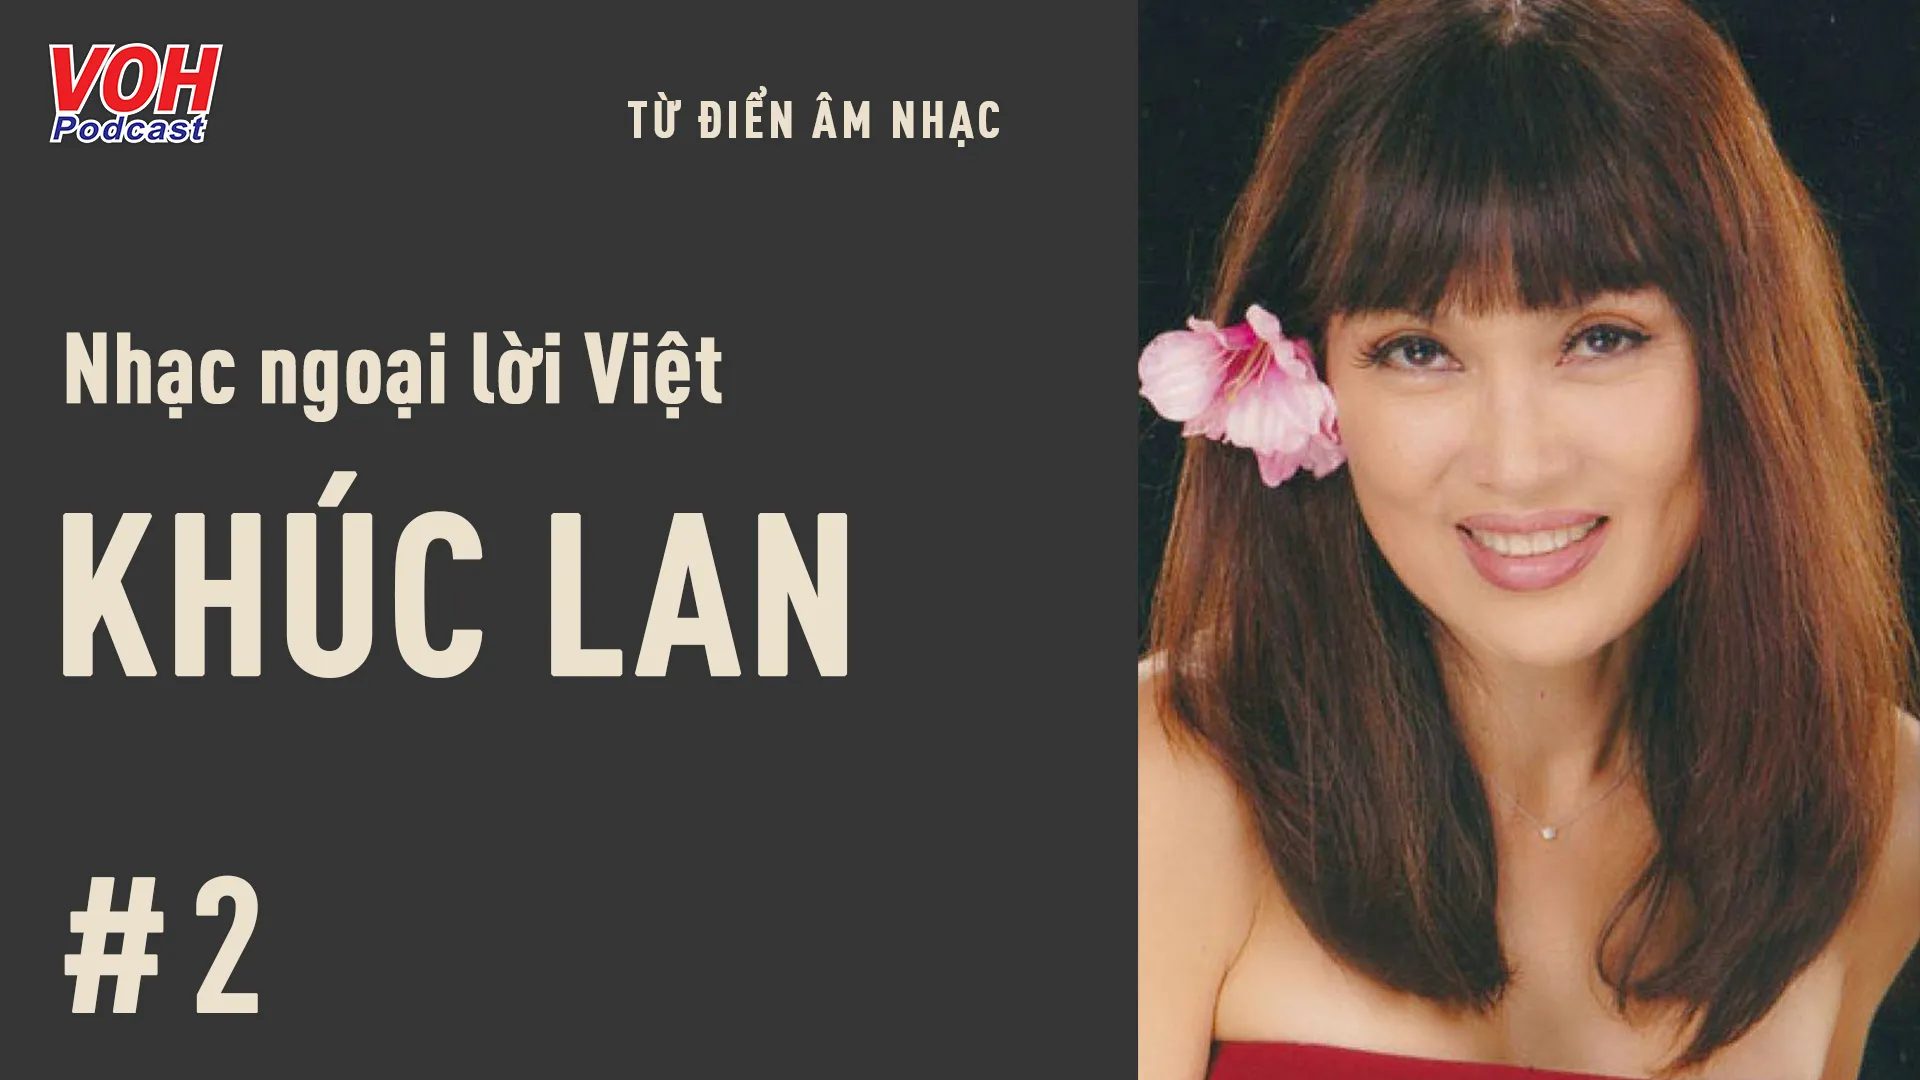 Nhạc ngoại lời Việt #2: Khúc Lan